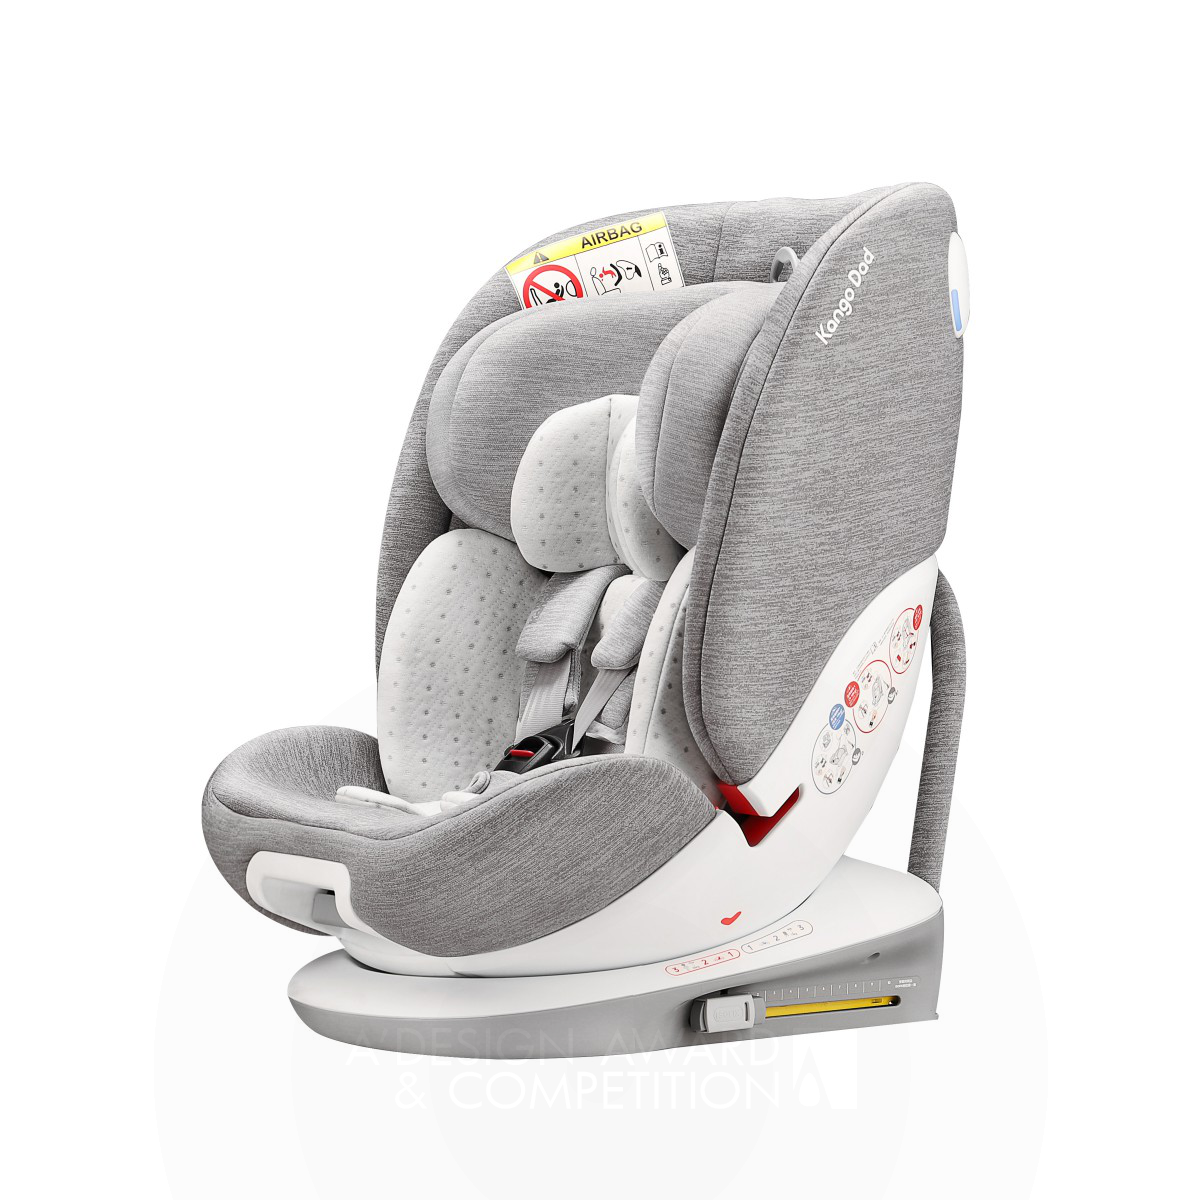 Kango Dad Funtrip V141 Baby Car Seat